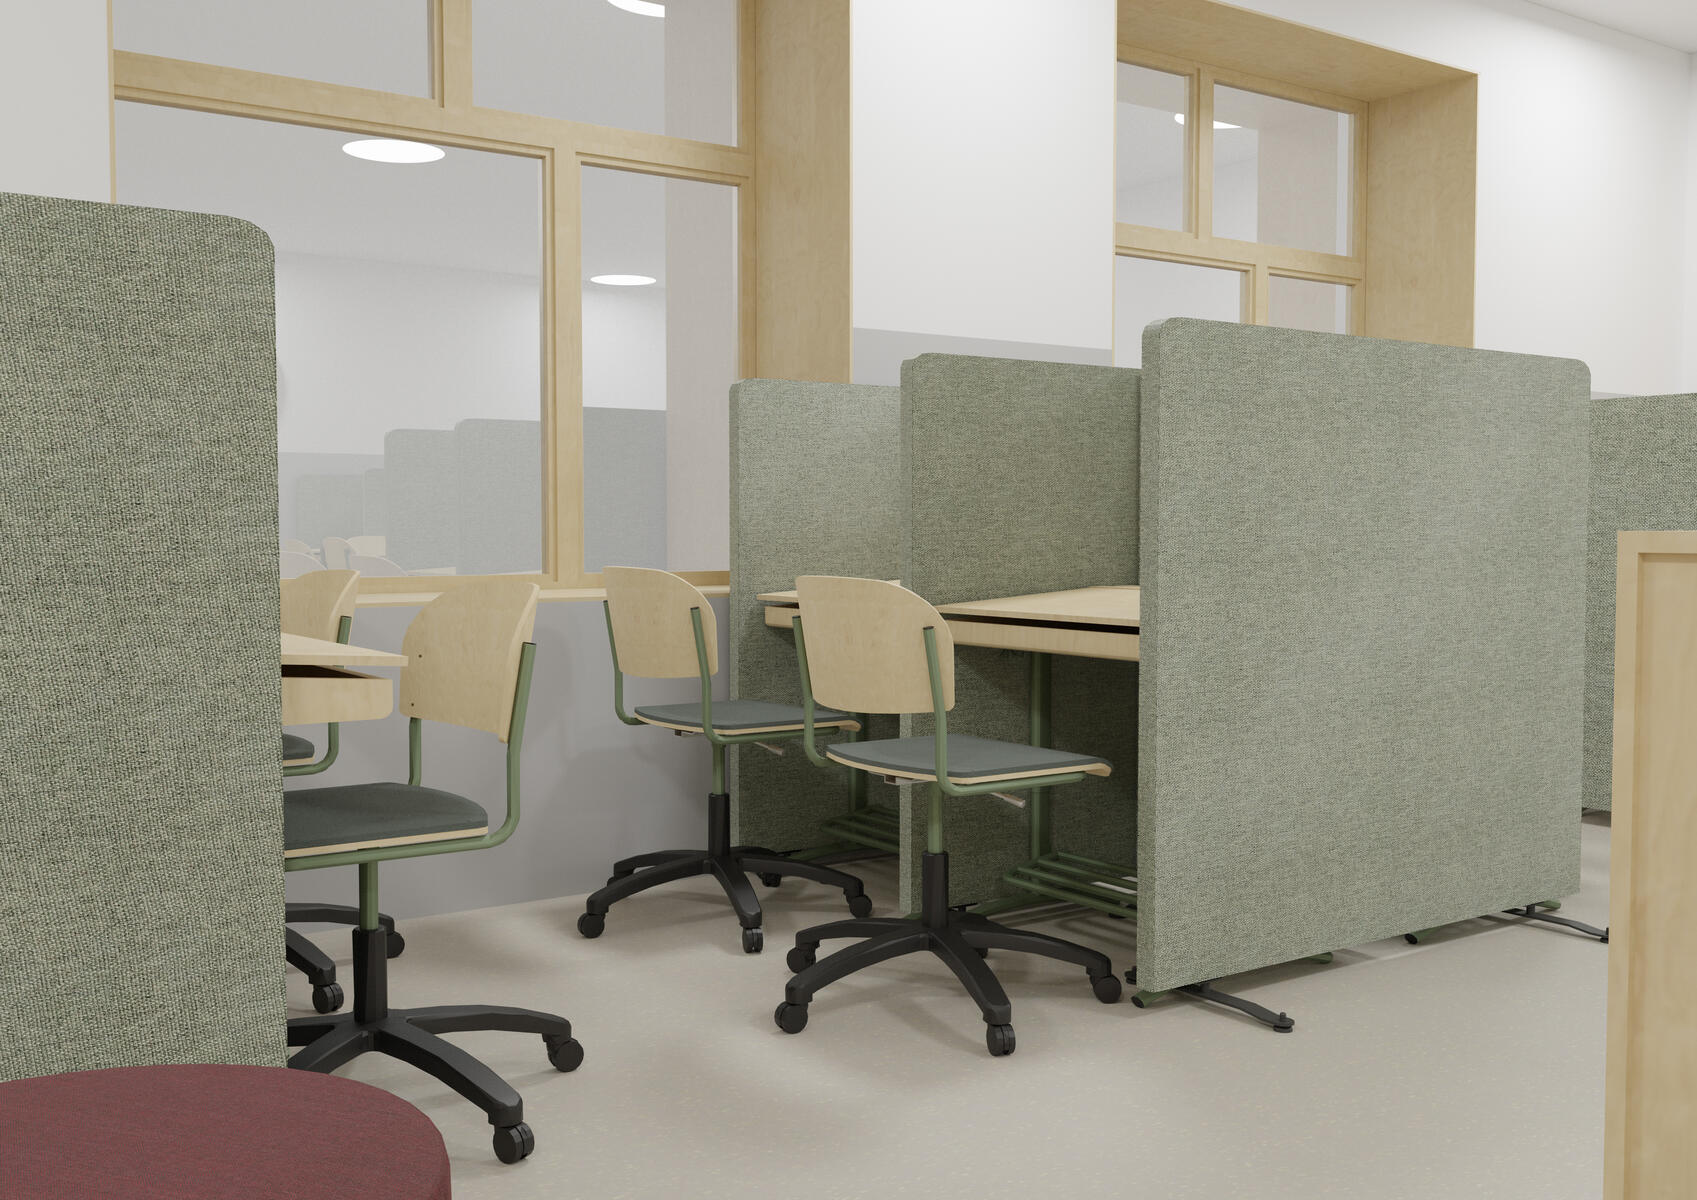 Klasseværelse indrettet efter Elme-modellen